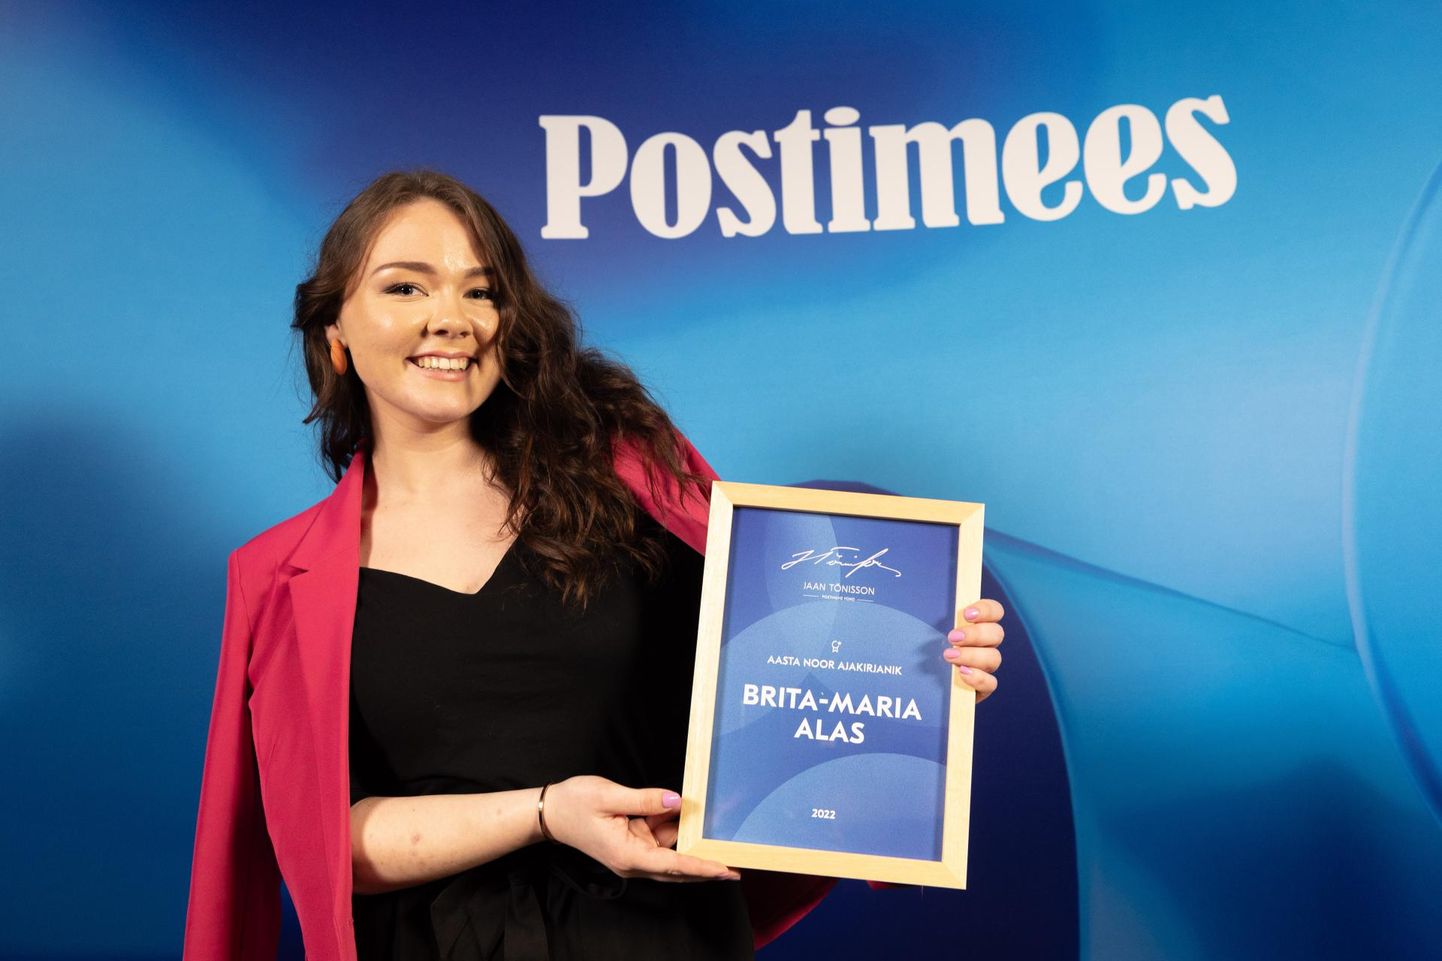 Jaan Tõnissoni
ajakirjandus-
preemia laureaat, aasta noor ajakirjanik
Brita-Maria Alas
töötab Postimehes Eesti uudiste
päevatoimetajana.